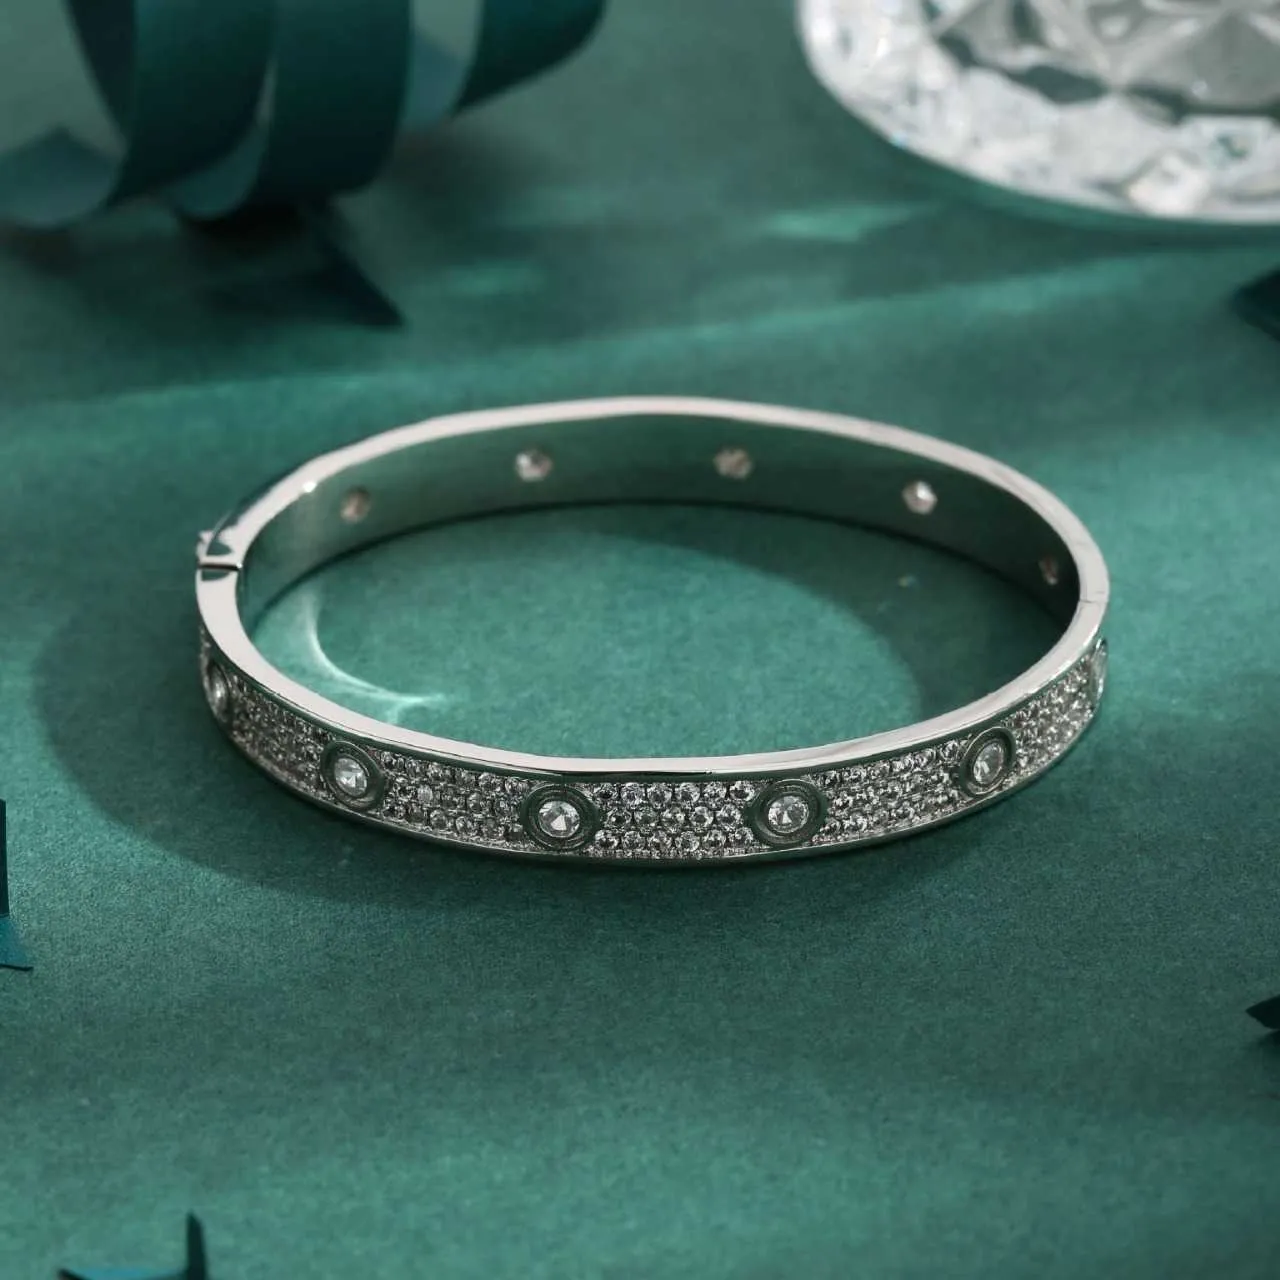 Lover Ekskluzywna bransoletka do pokazywania miłości klasycznej bransoletki moda popularna wśród oryginalnego logo Cartter